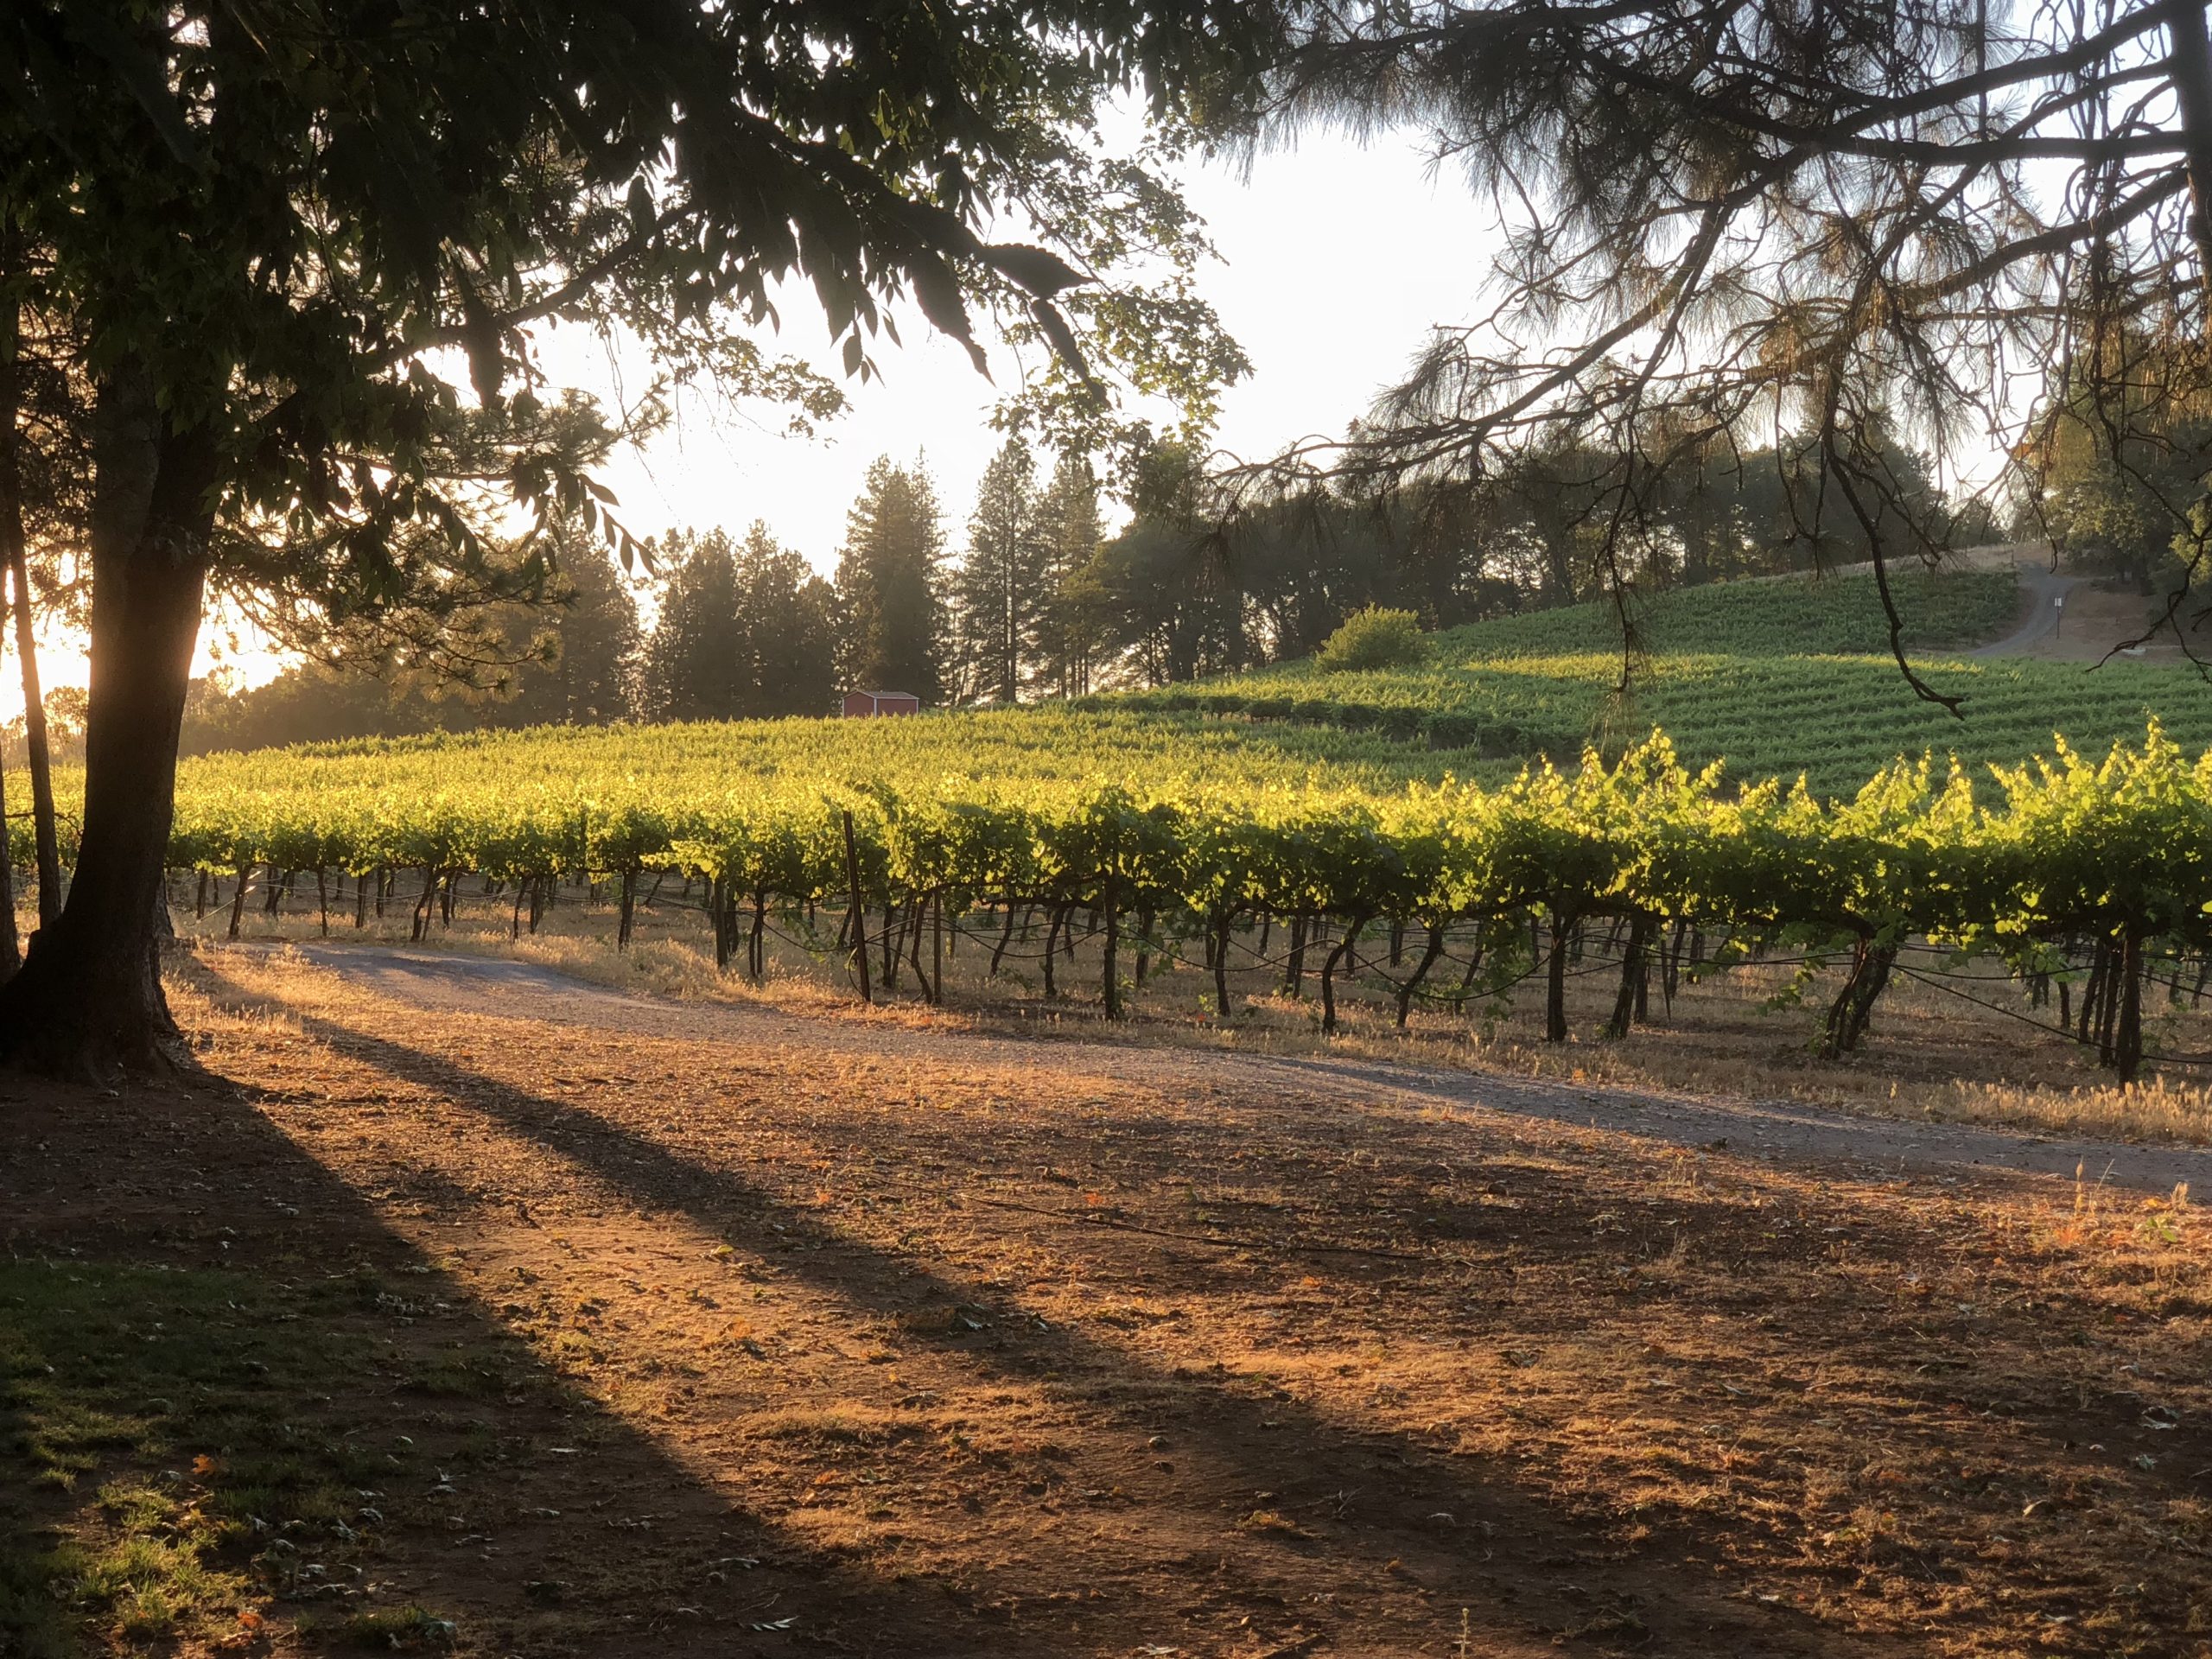 Sierra Vista Vineyards and Winery